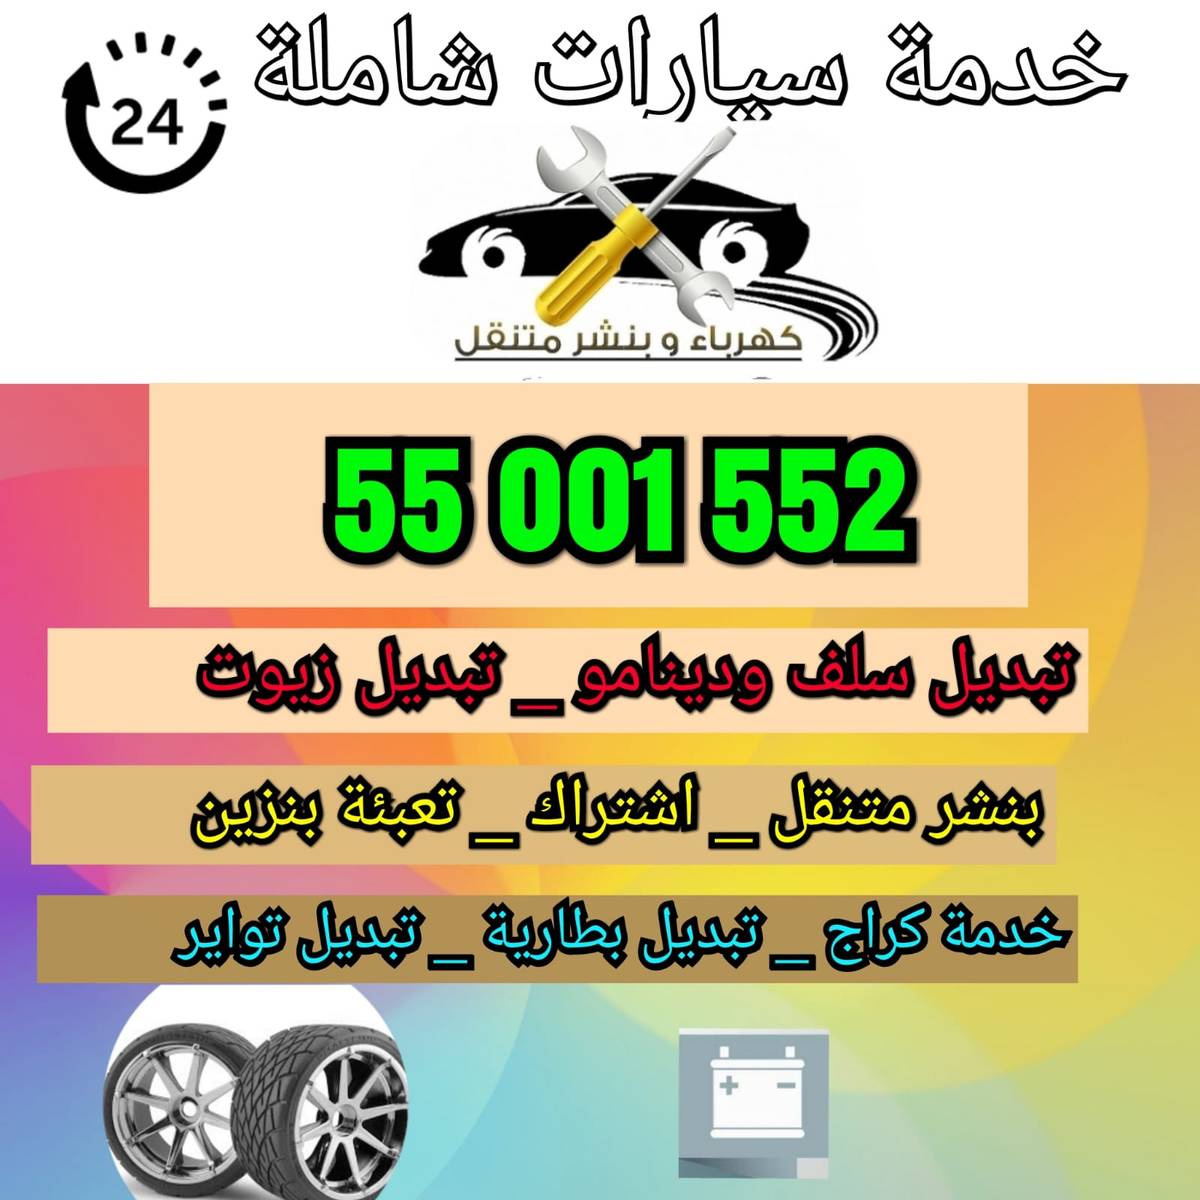 خدمة تصليح سيارات في مكانها في الكويت 55001552